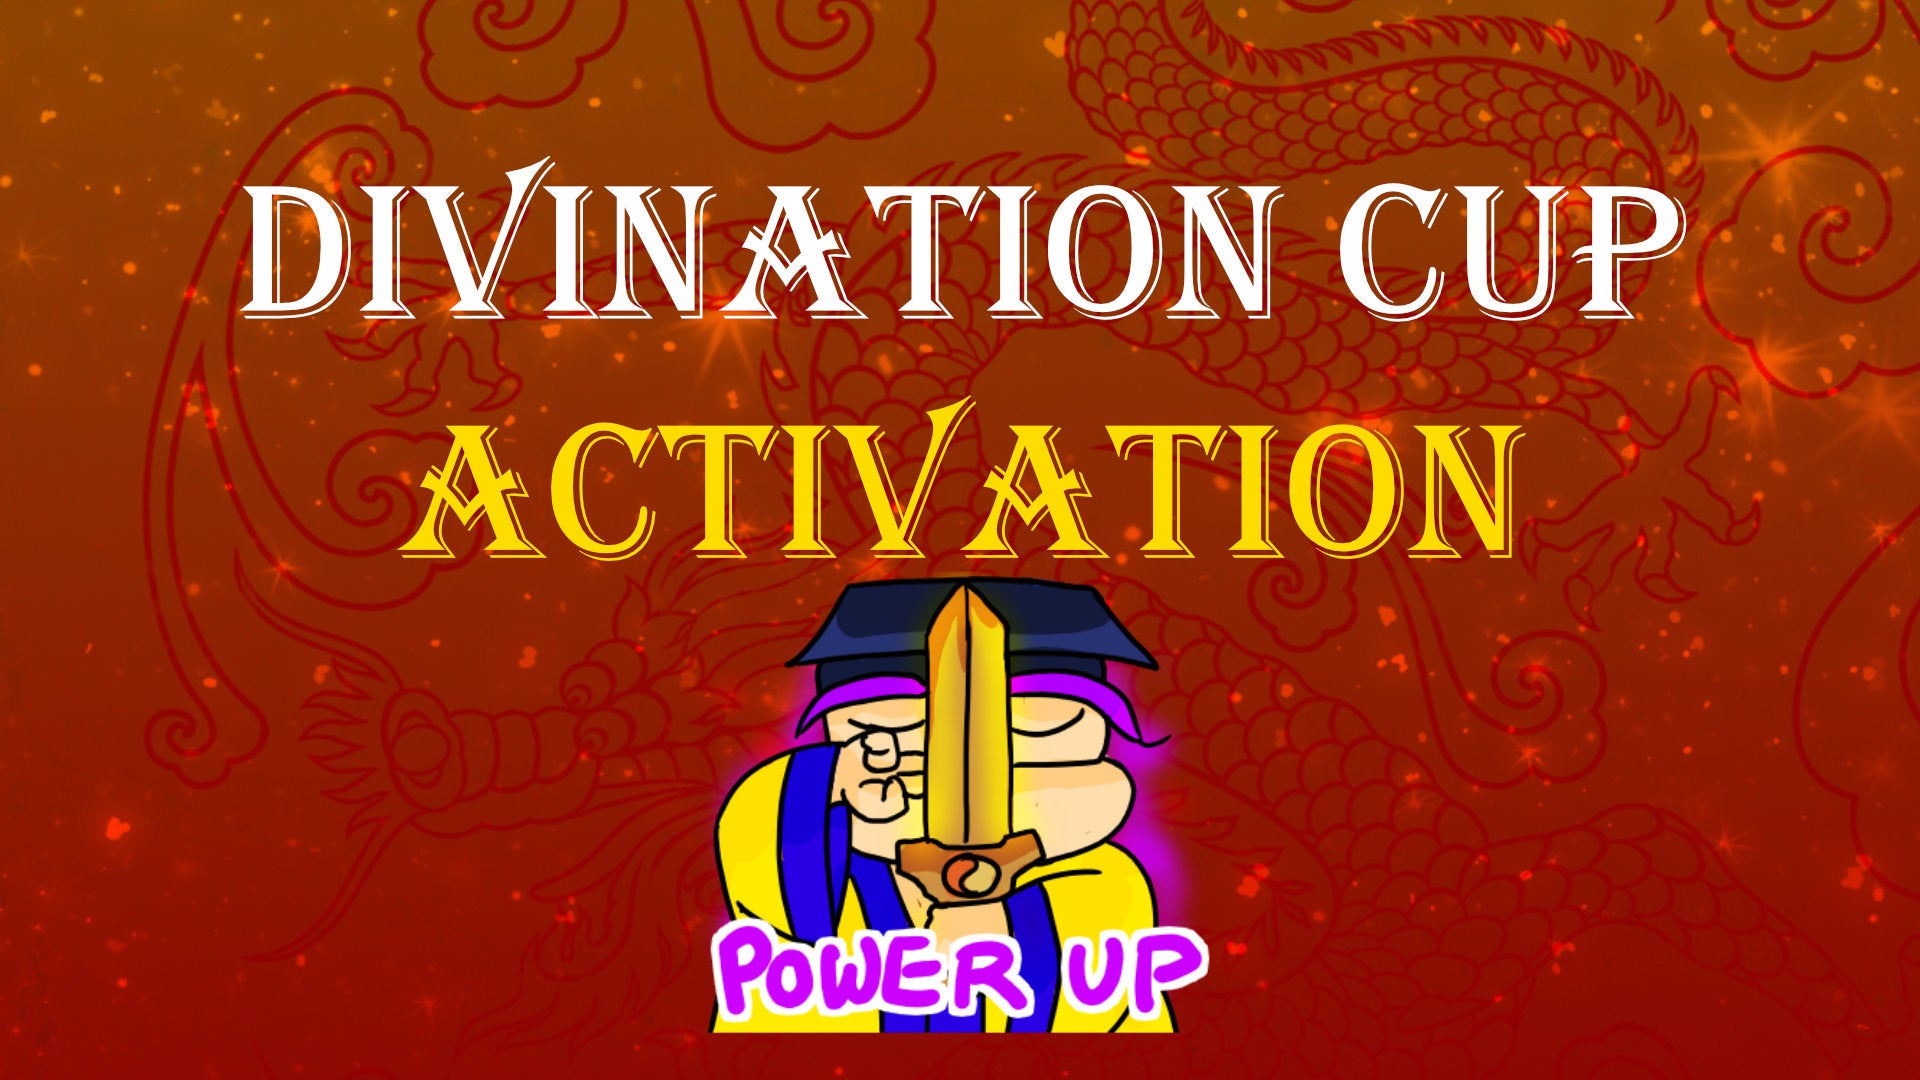 
                  Divination Cup Activation
                